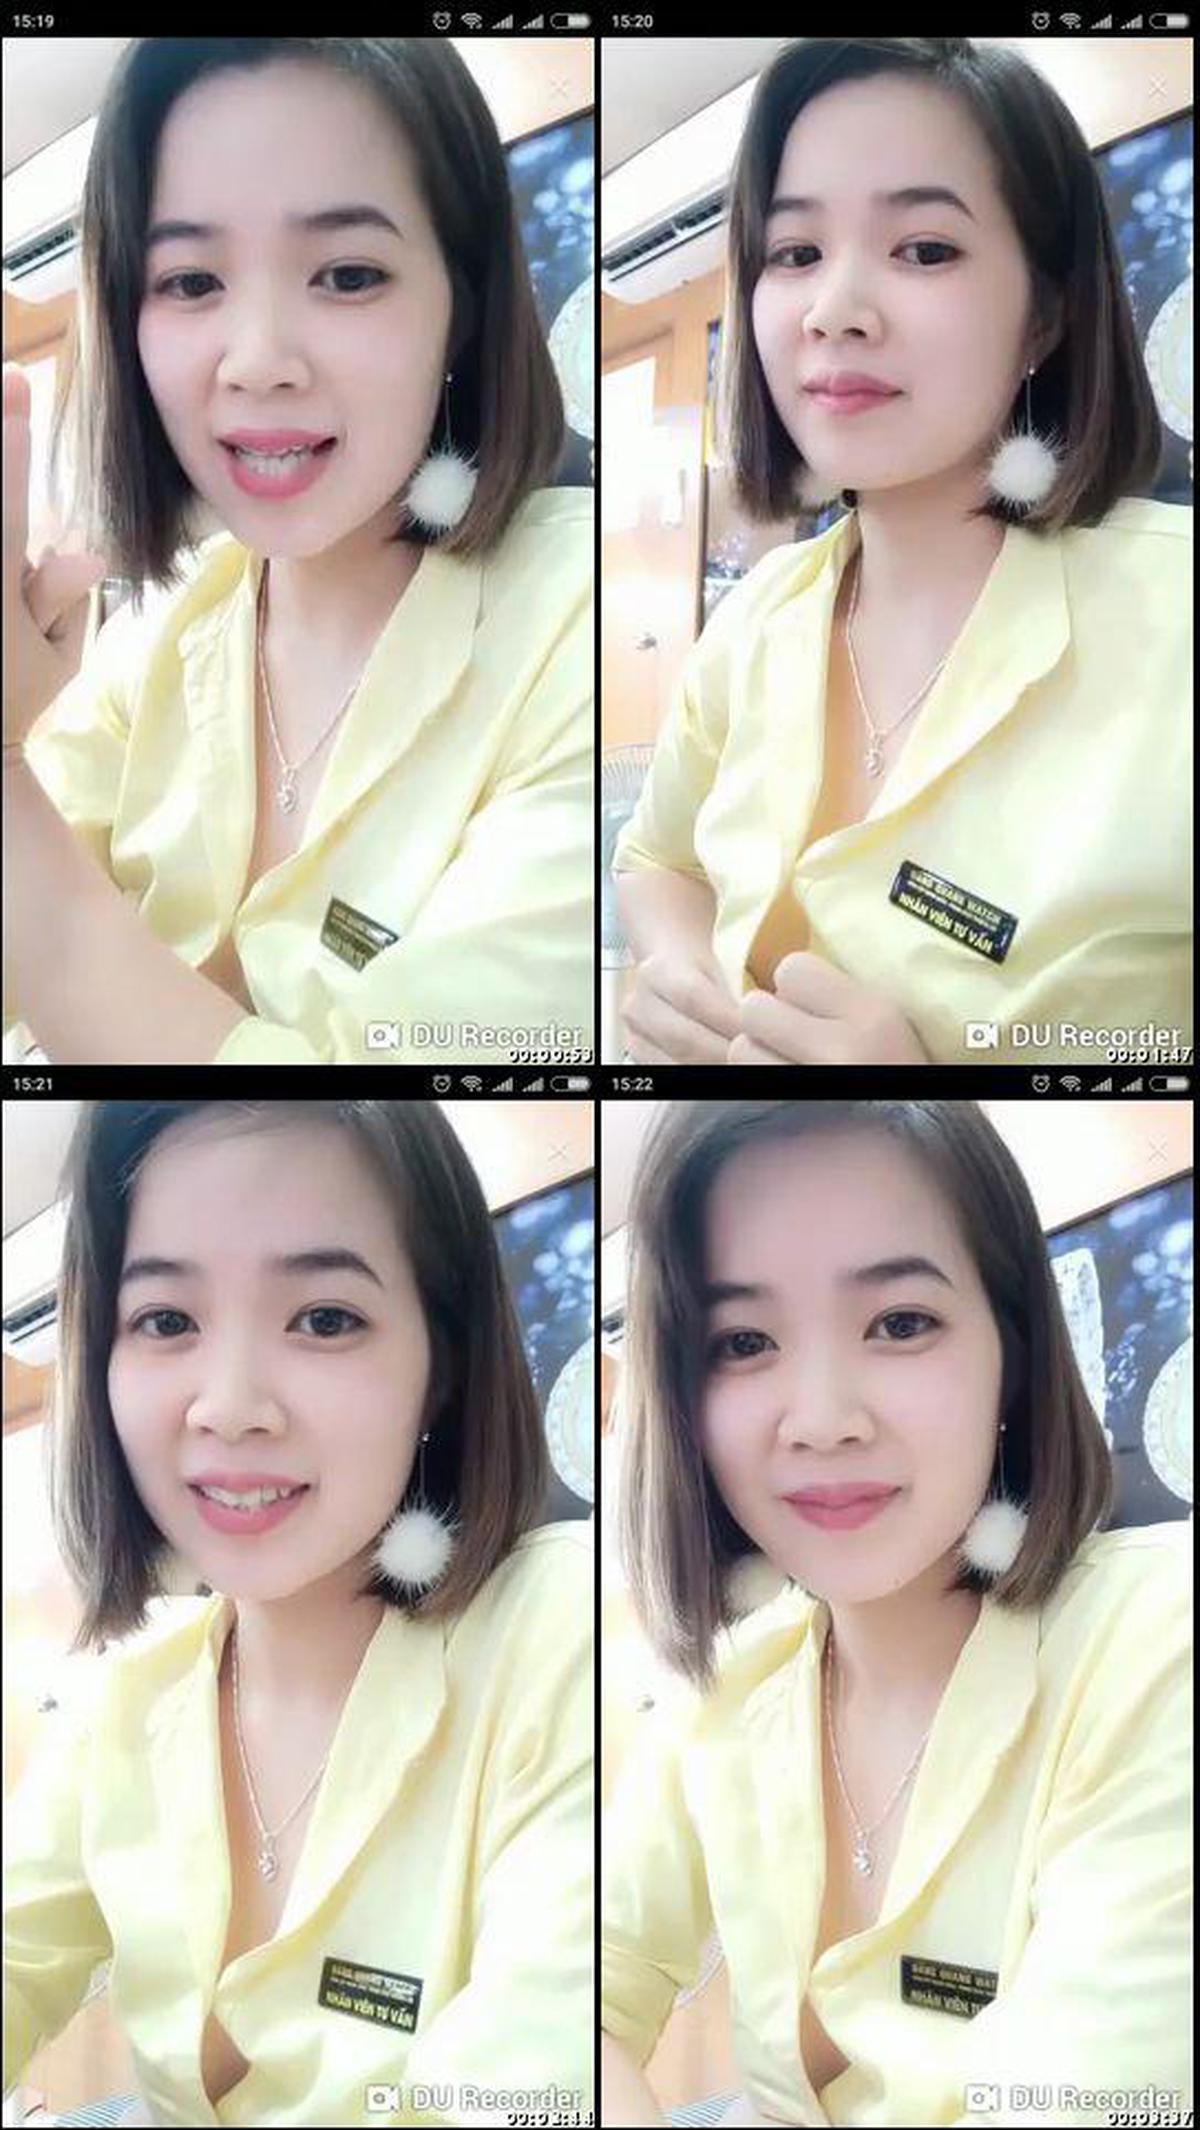 digi-tents_webcam_357 [Não] Garotas bonitas fazem maona elétrica e mijam na entrega! !! , 18 anos, cabelo preto E cup ☆ chat ao vivo